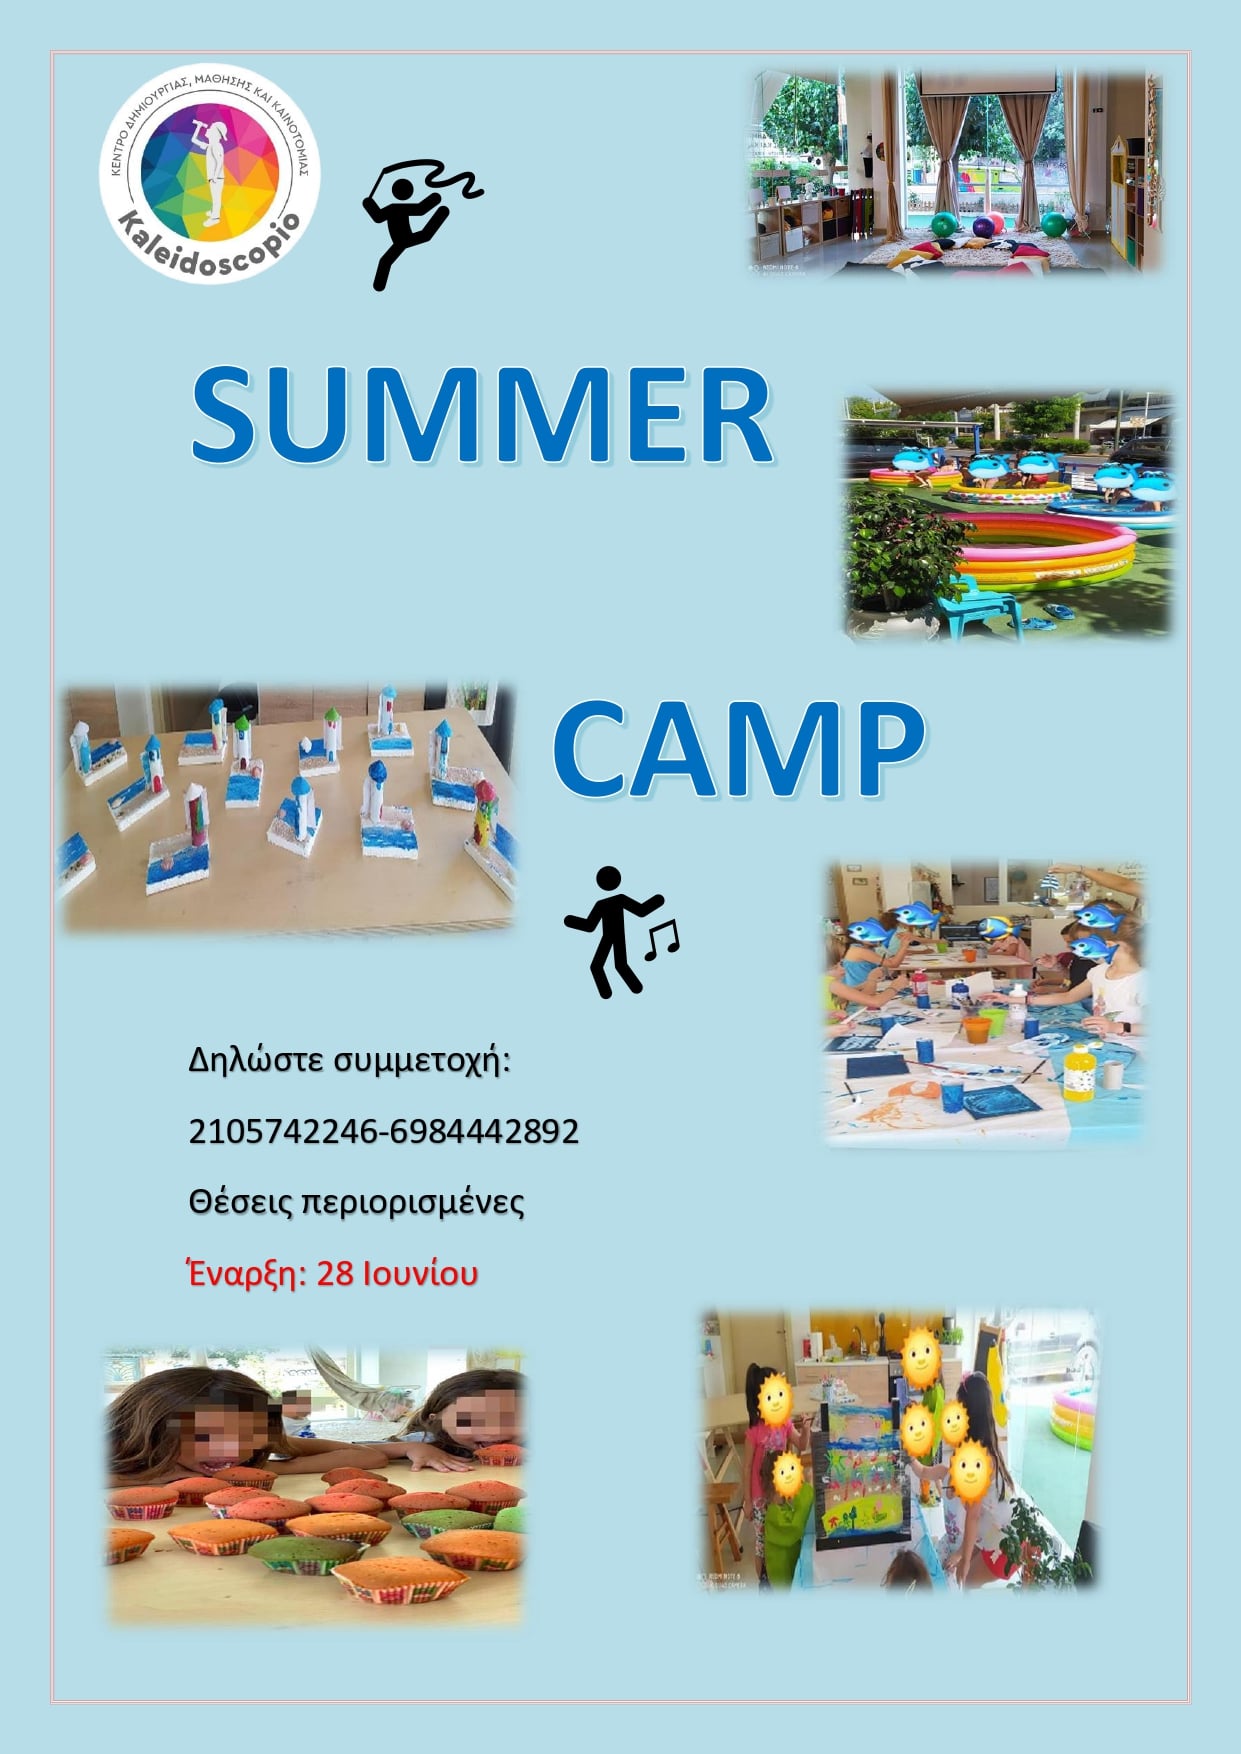 Summer Camp - Kaleidoscopio logo